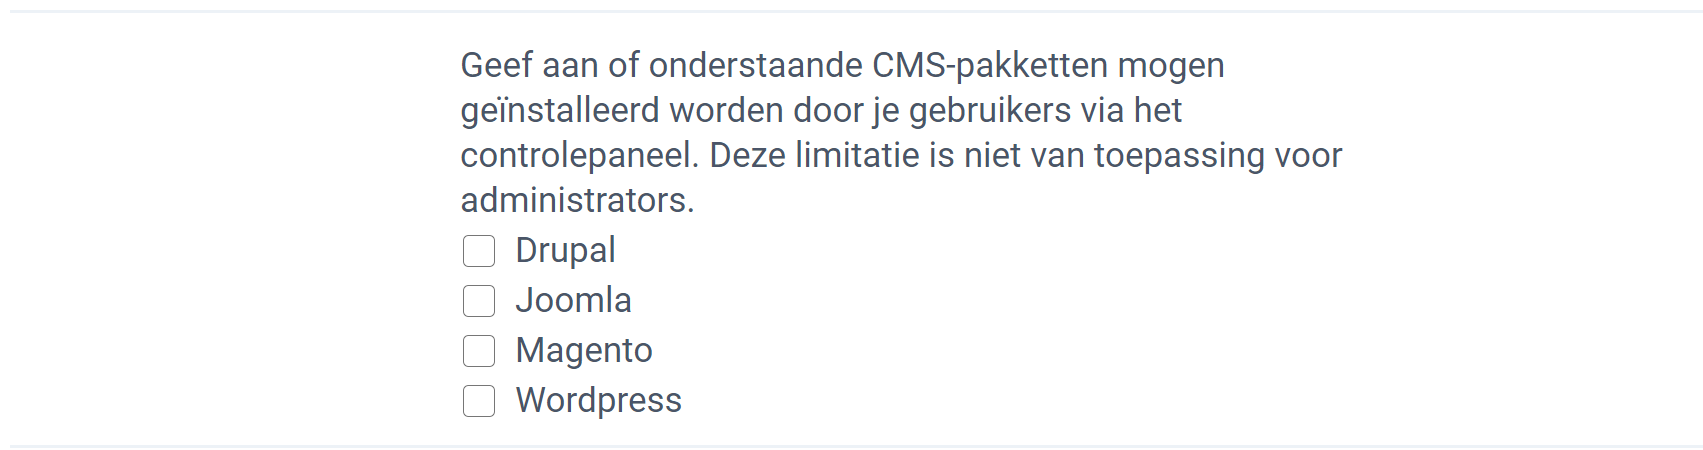 CMS-pakket